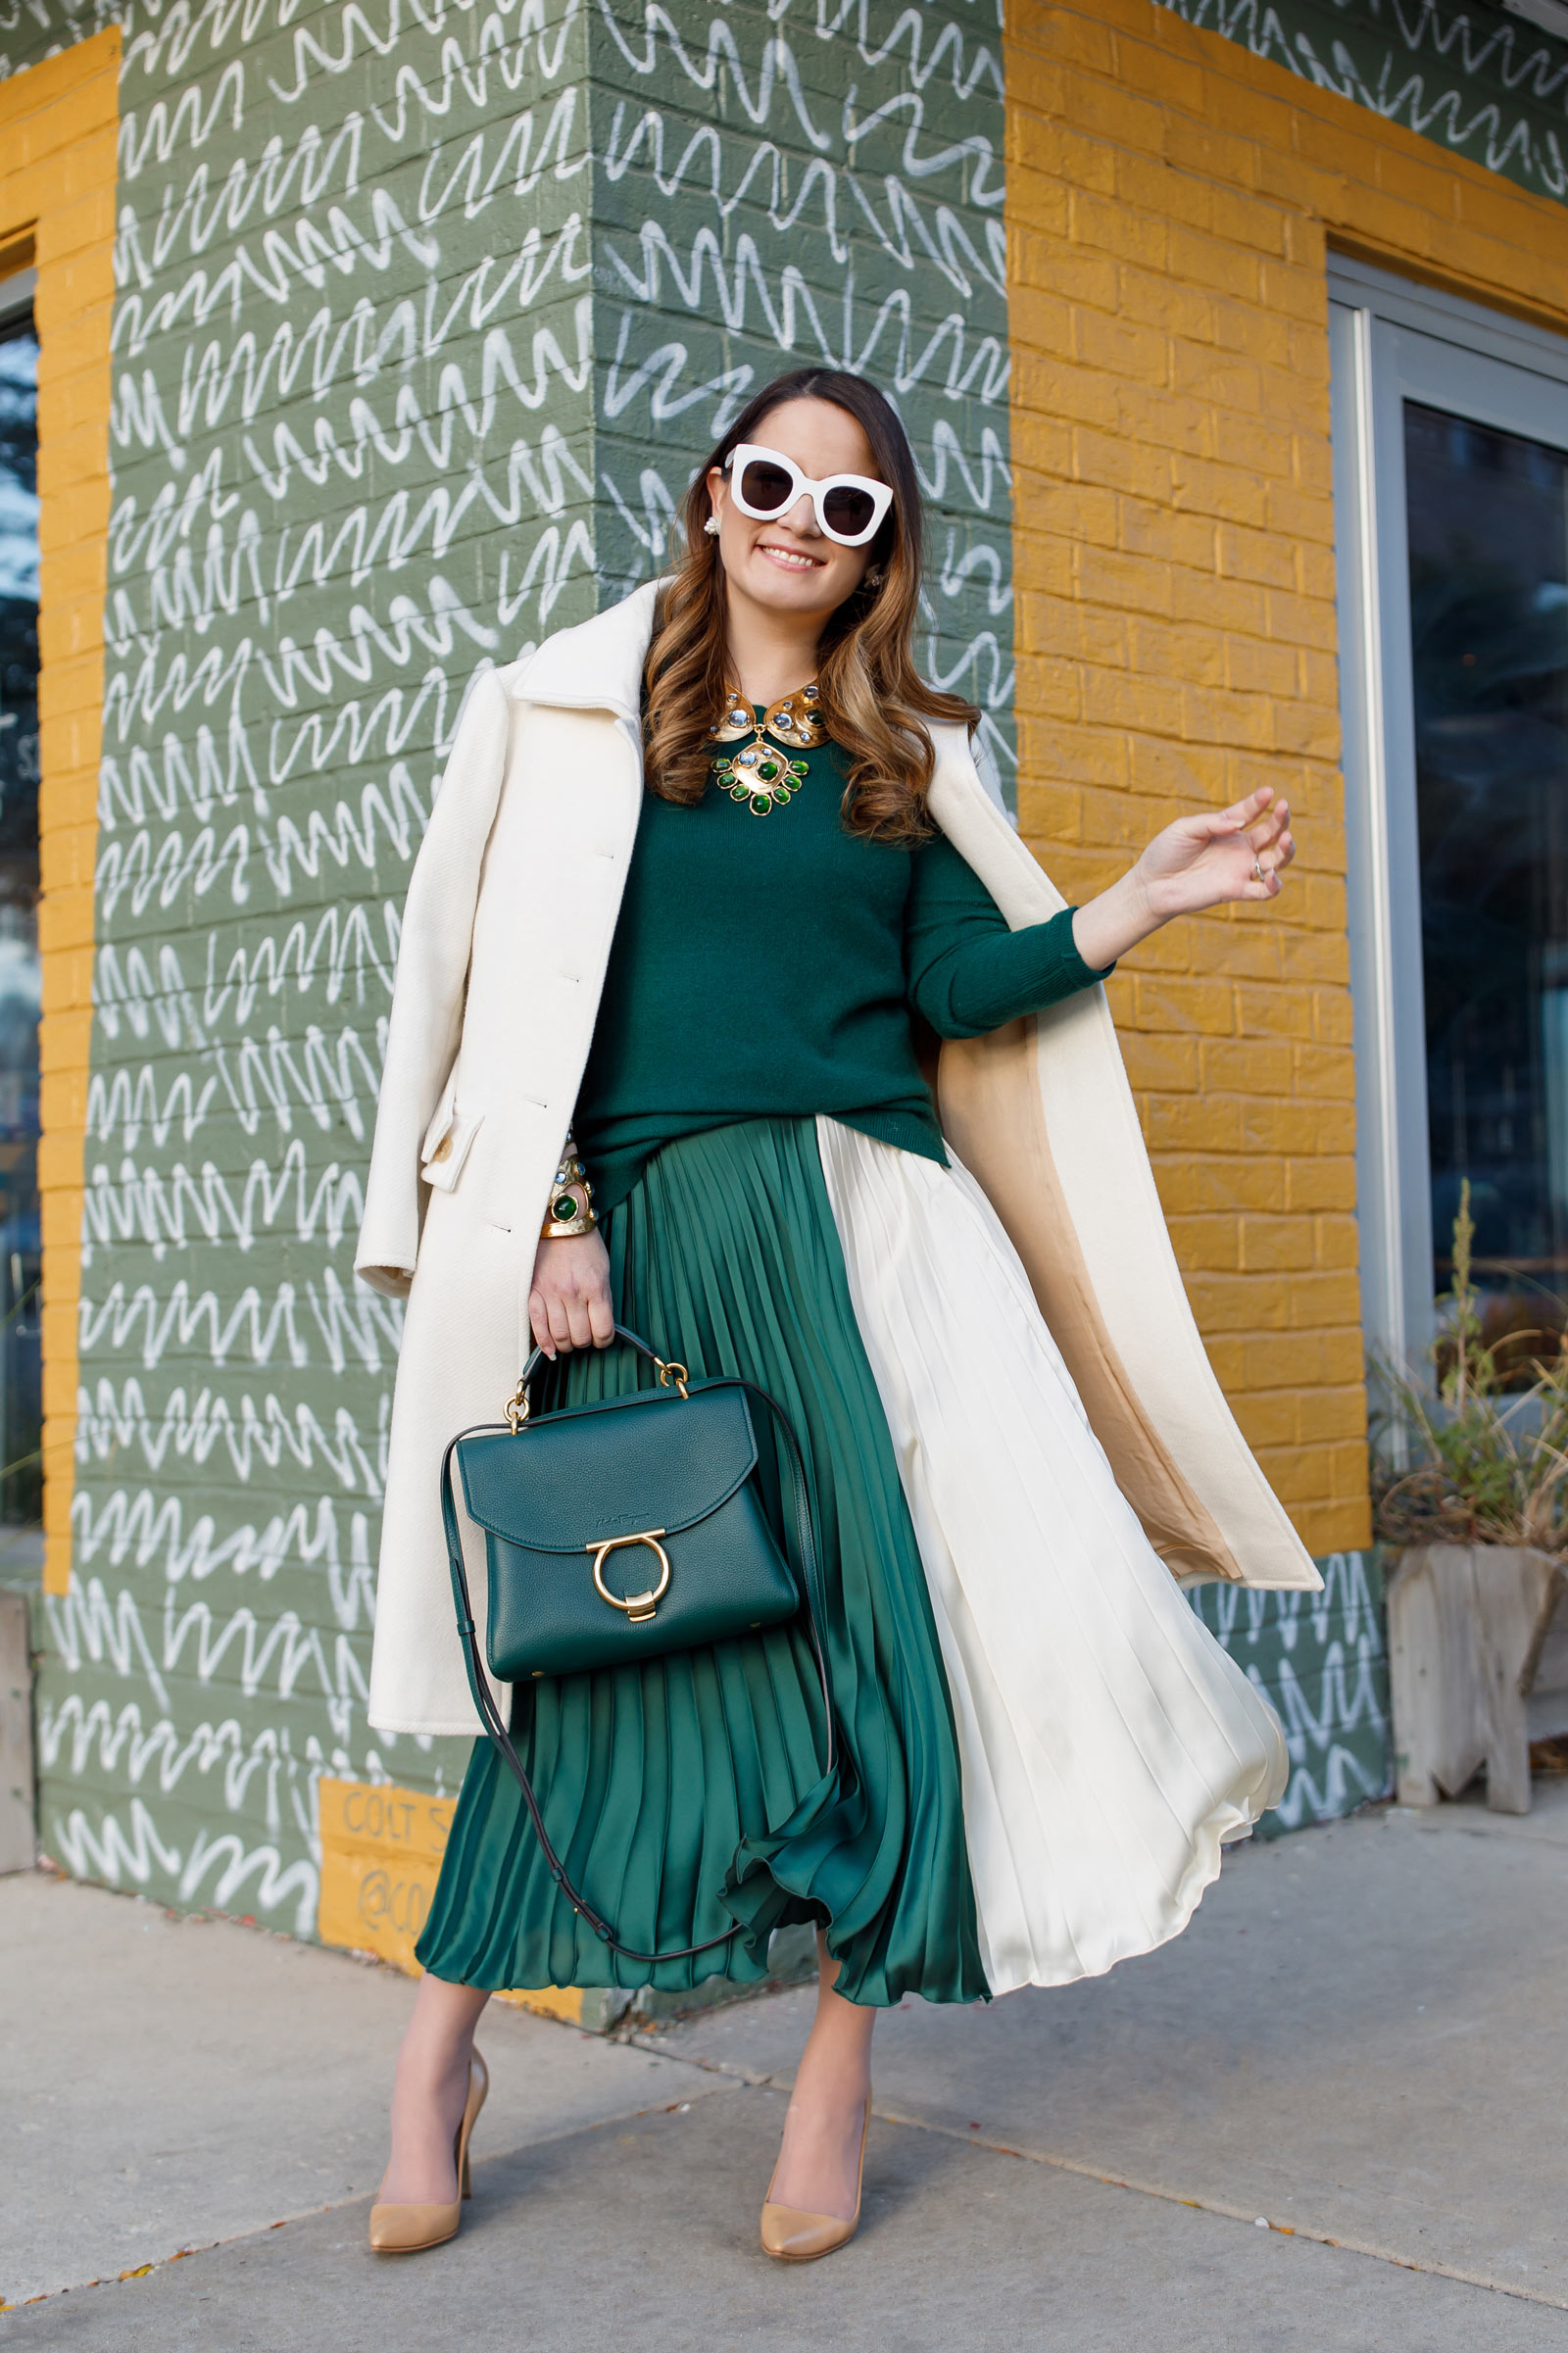 Alaïa's Le Couer Handbag Stole Our Hearts This Fashion Month | British Vogue